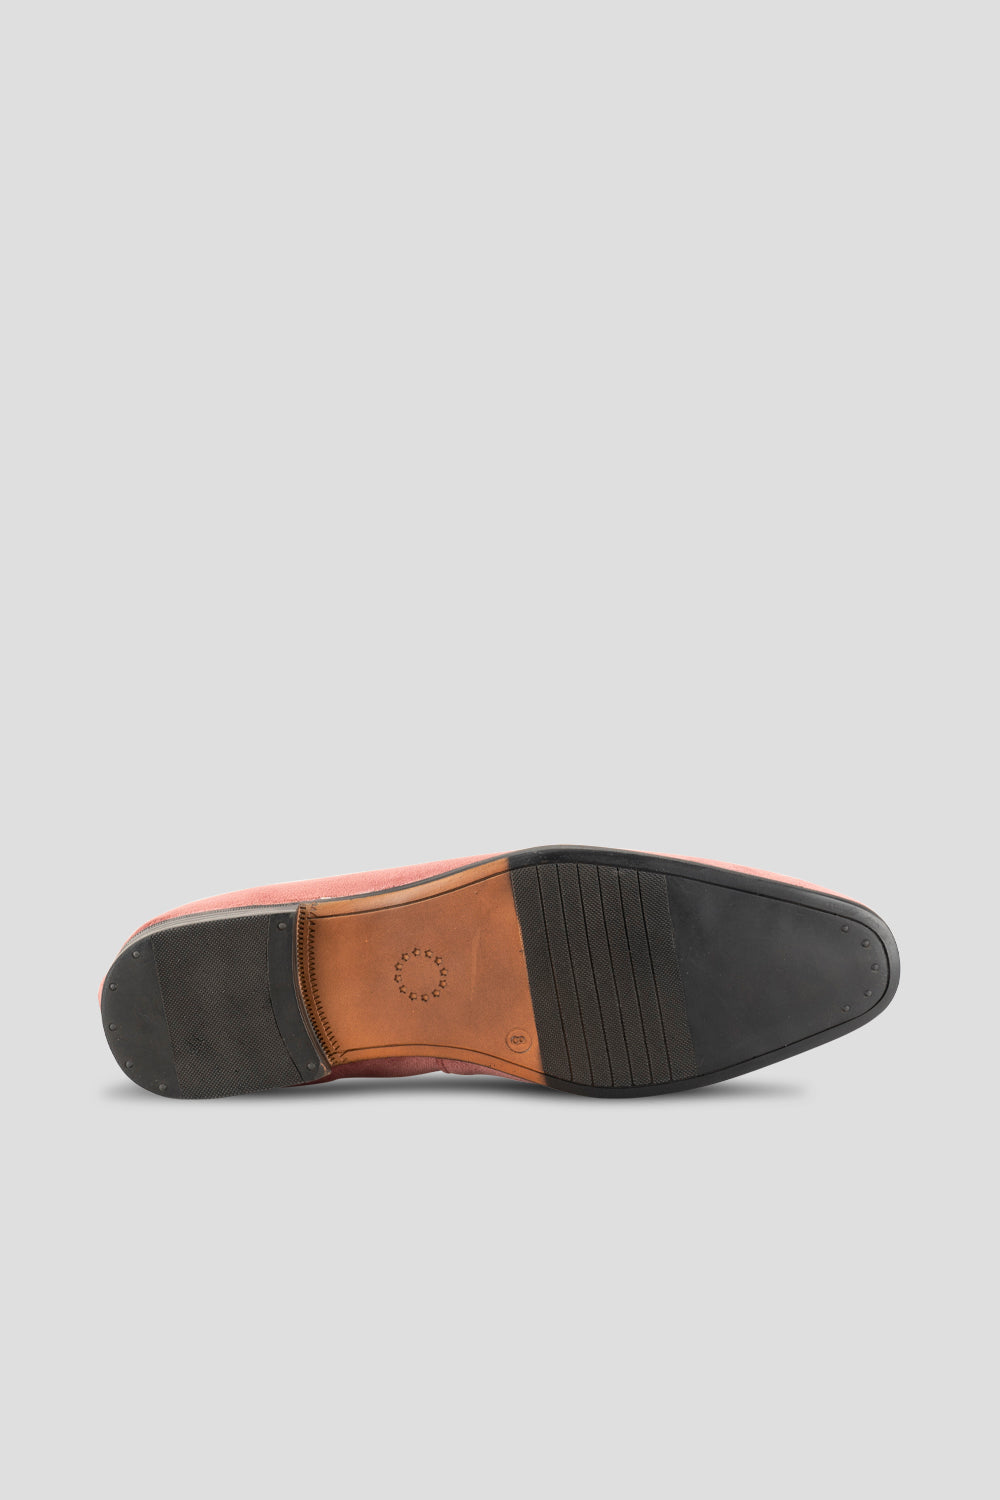 Alfie  Mens Salmon Velvet slippers loafer pink sole